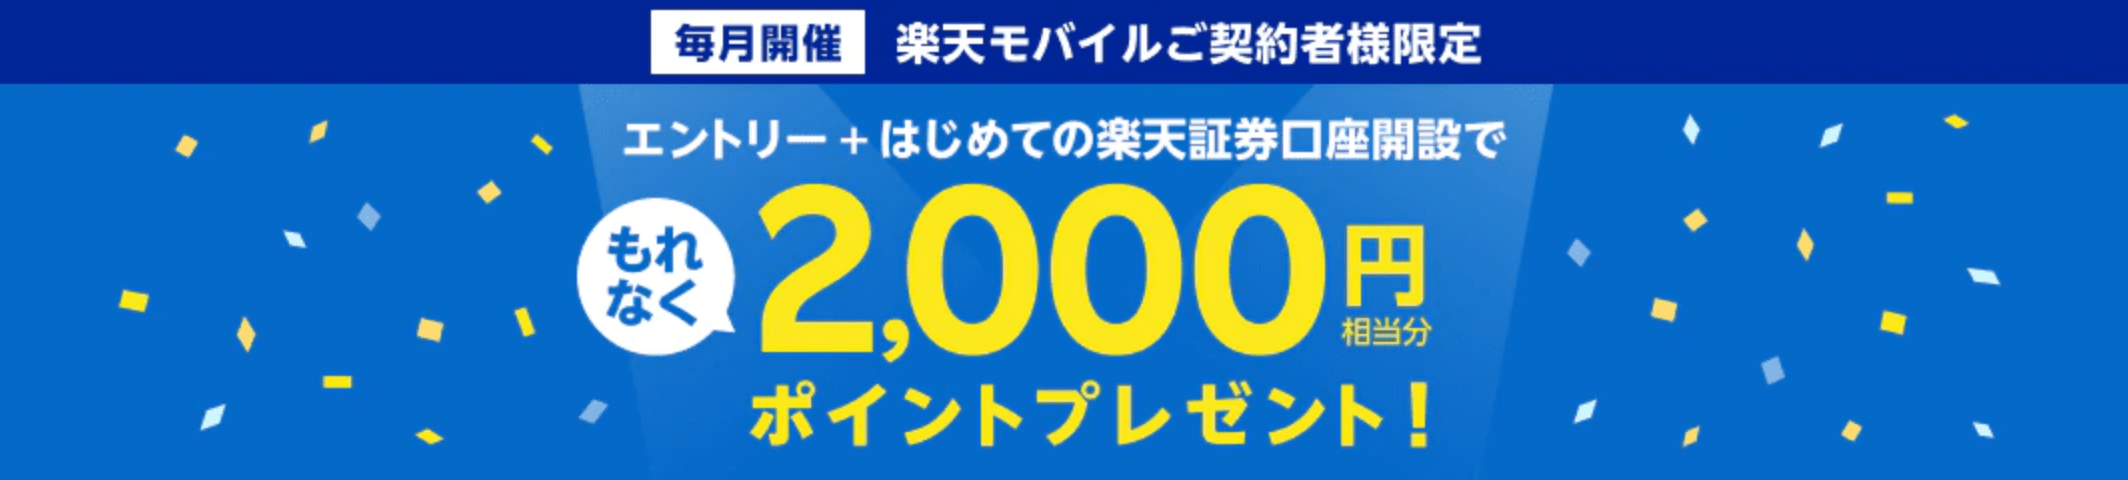 【楽天証券】楽天モバイル契約後の口座開設で2,000ポイントゲット